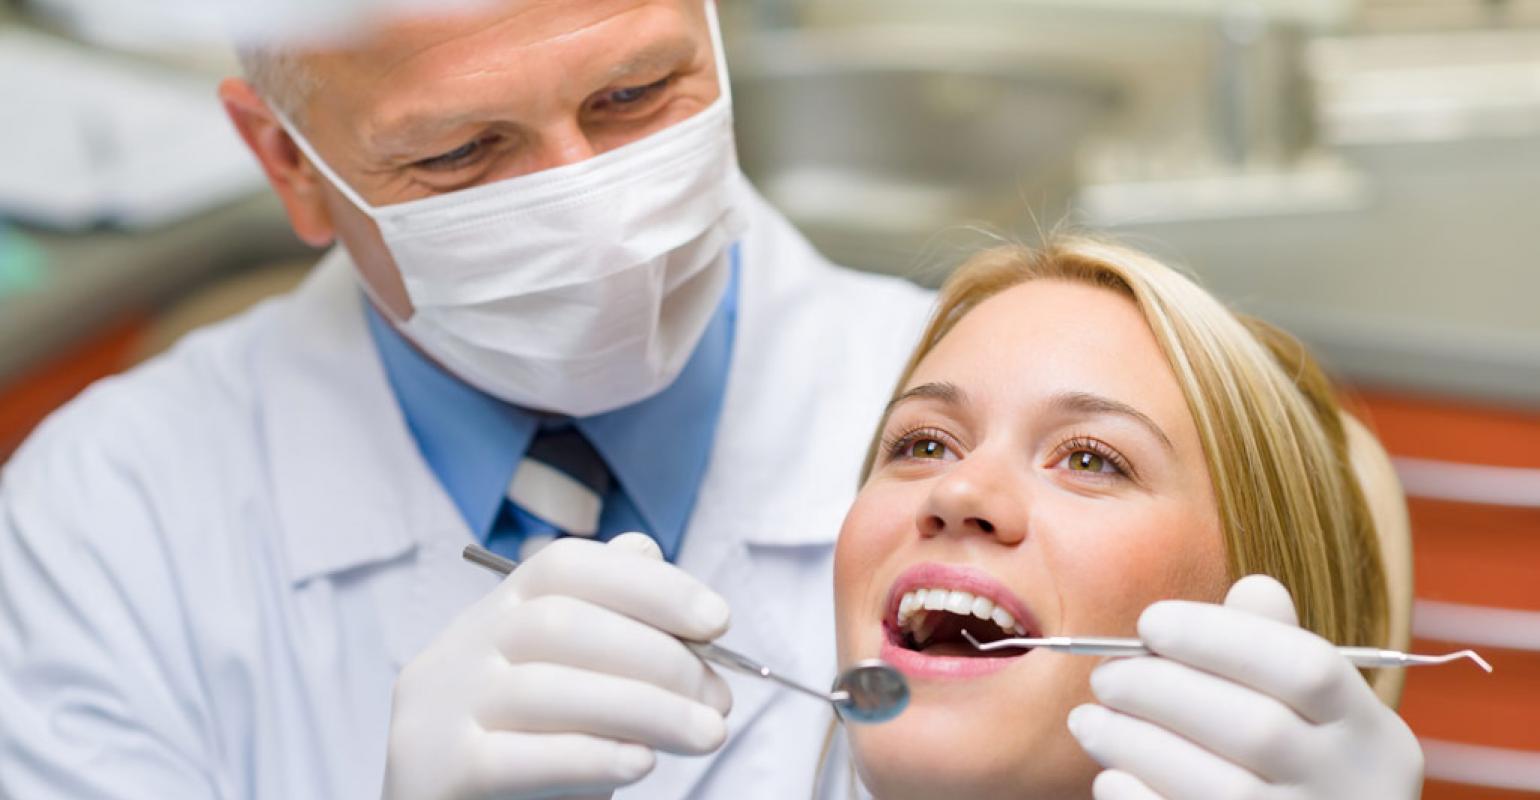 Endodontinis gydymas